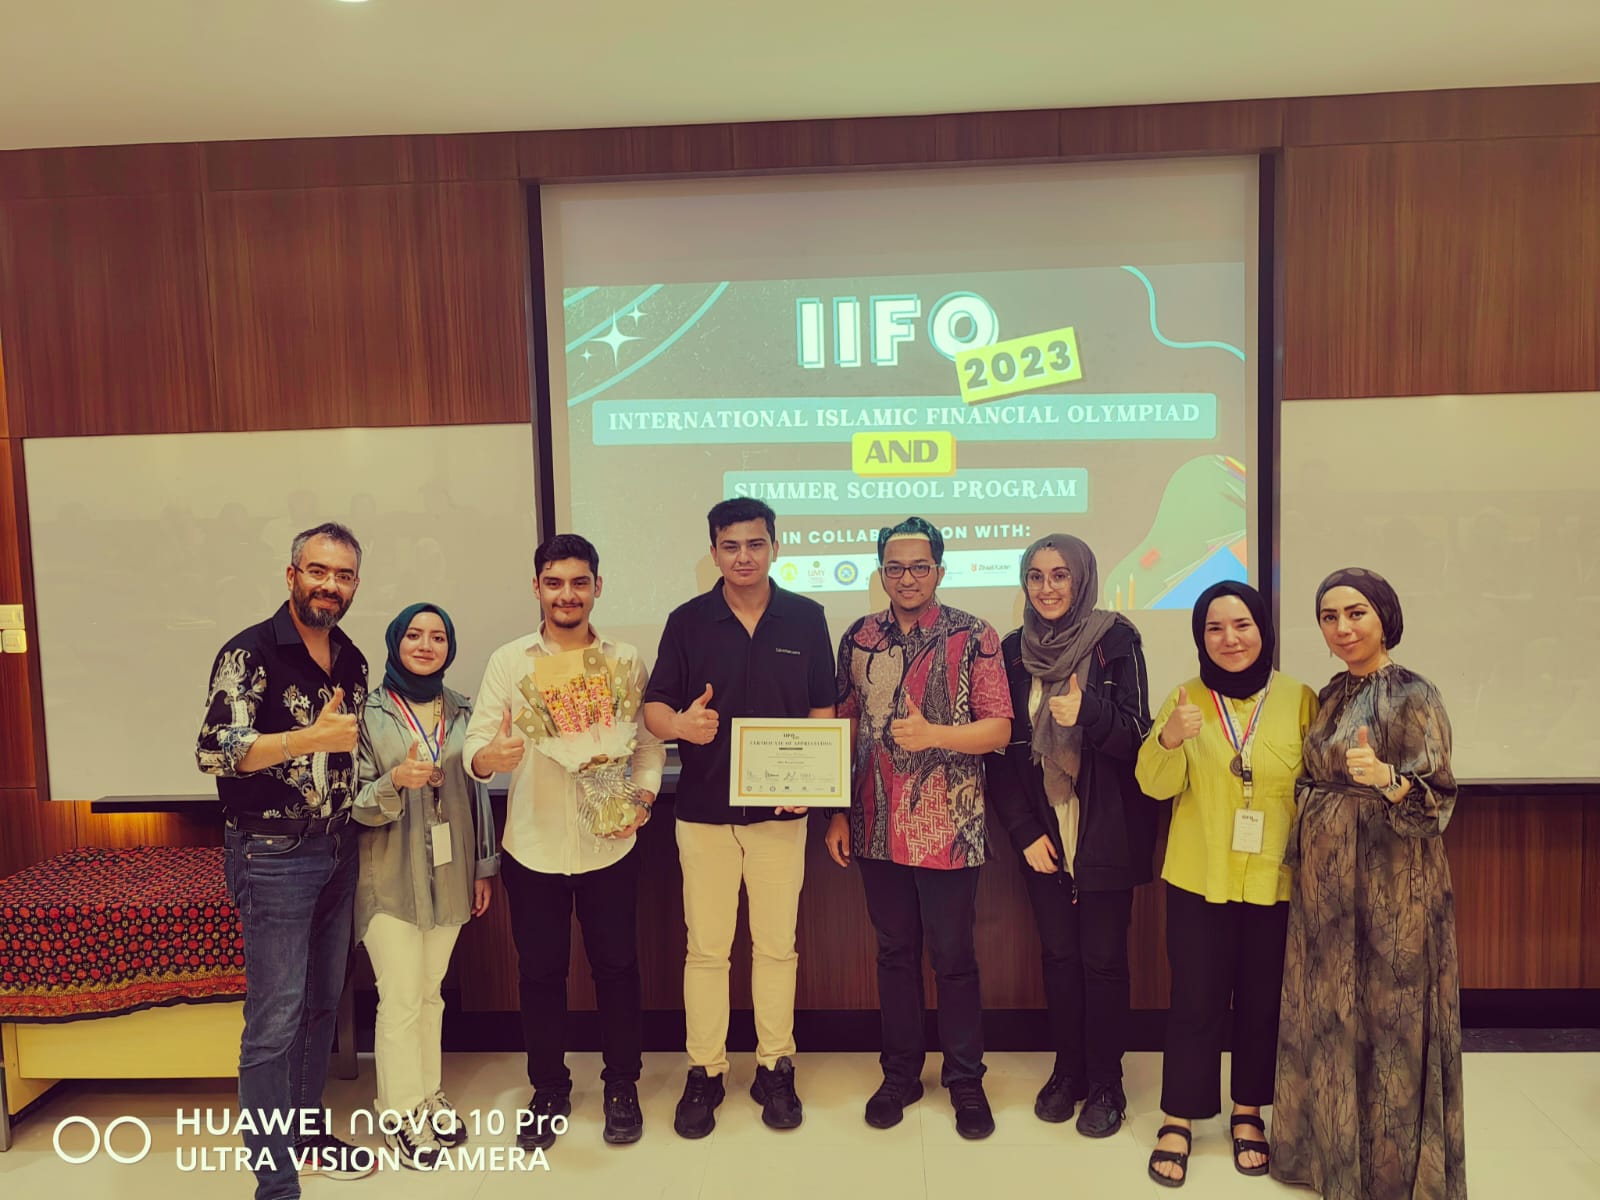 KTO Karataylı İslam İktisadı ve Finans Bölümü Öğrencileri, Uluslararası Yarışmalarla Gururlandırmaya Devam Ediyor